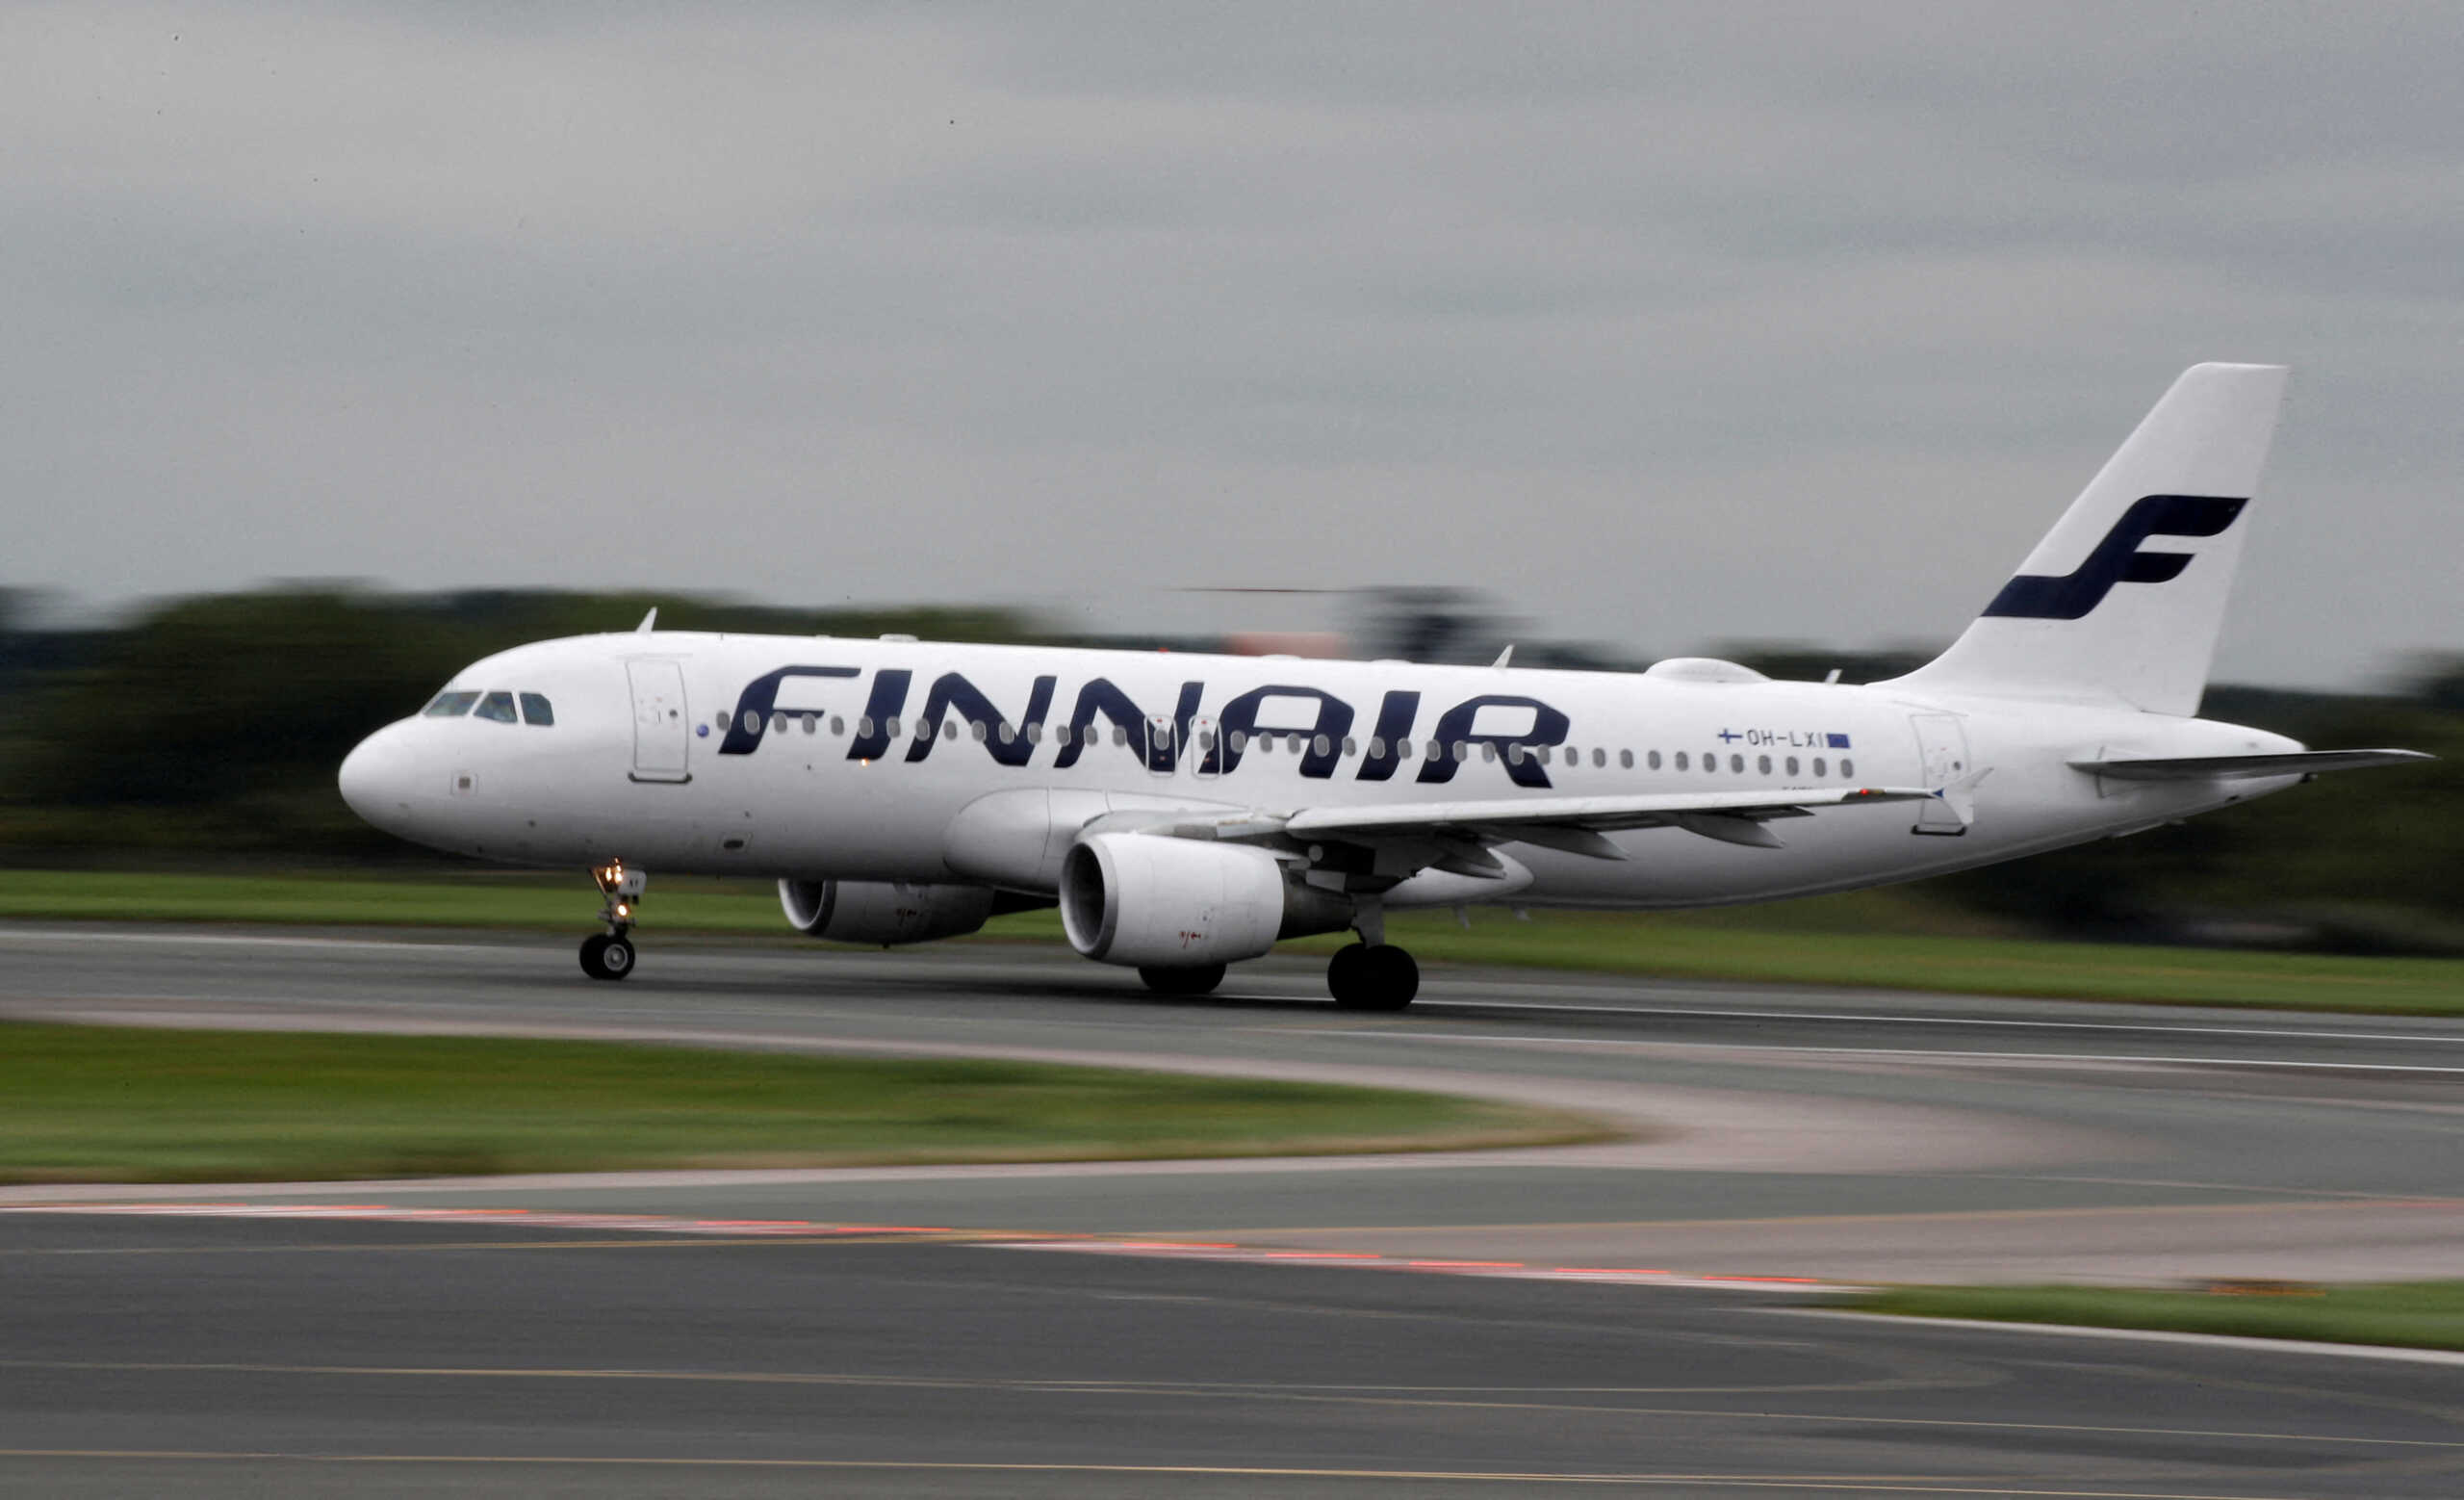 Φινλανδία: Αναβάλλονται οι πτήσεις της Finnair προς το Τάρτου της Εσθονίας λόγω παρεμβολών στο GPS